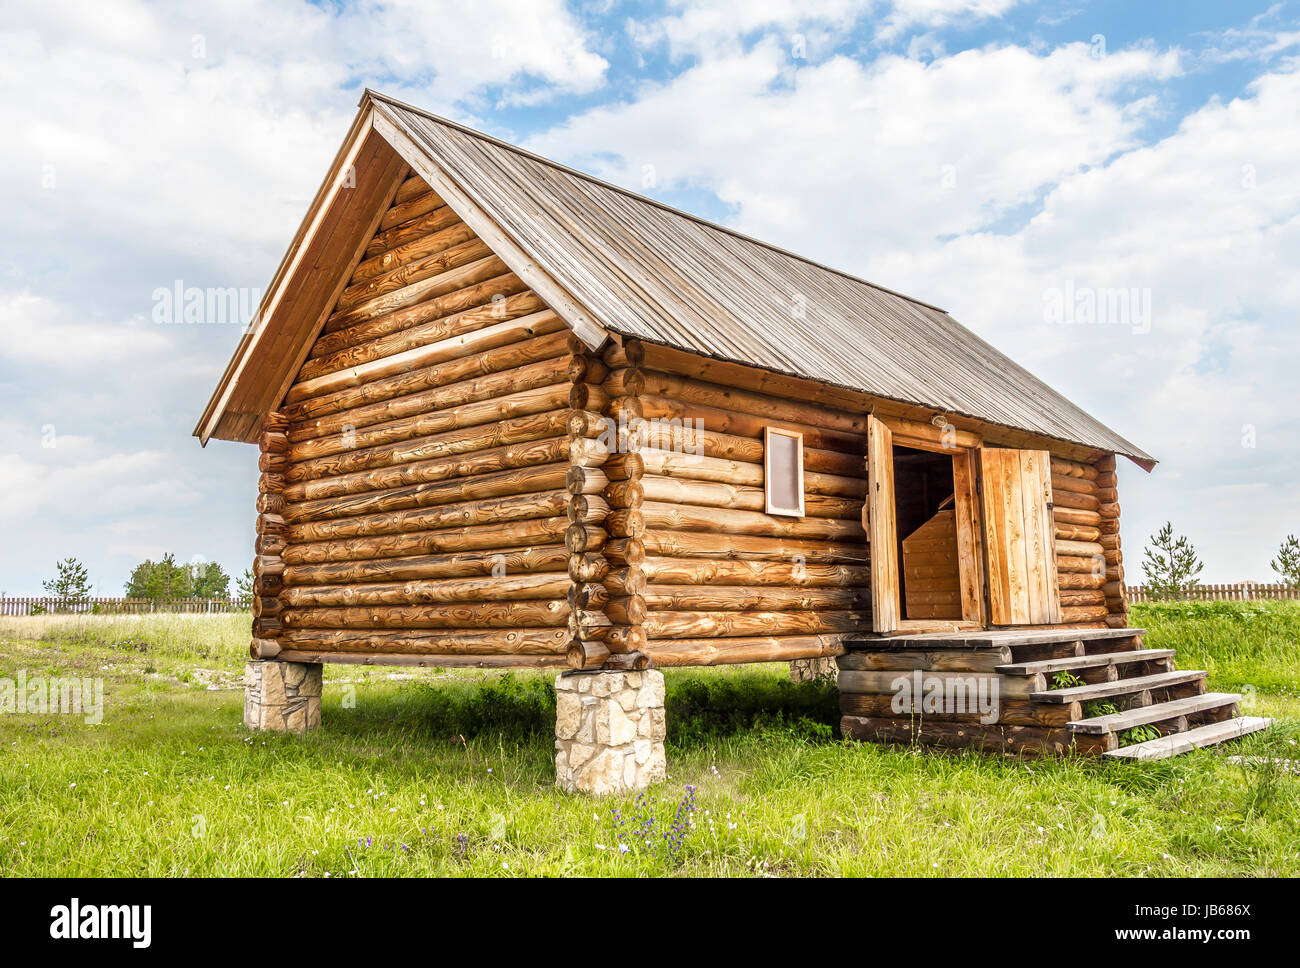 Prevalecer A tiempo Asalto Casa de troncos de madera rústica en los puestos como la fundación  Fotografía de stock - Alamy